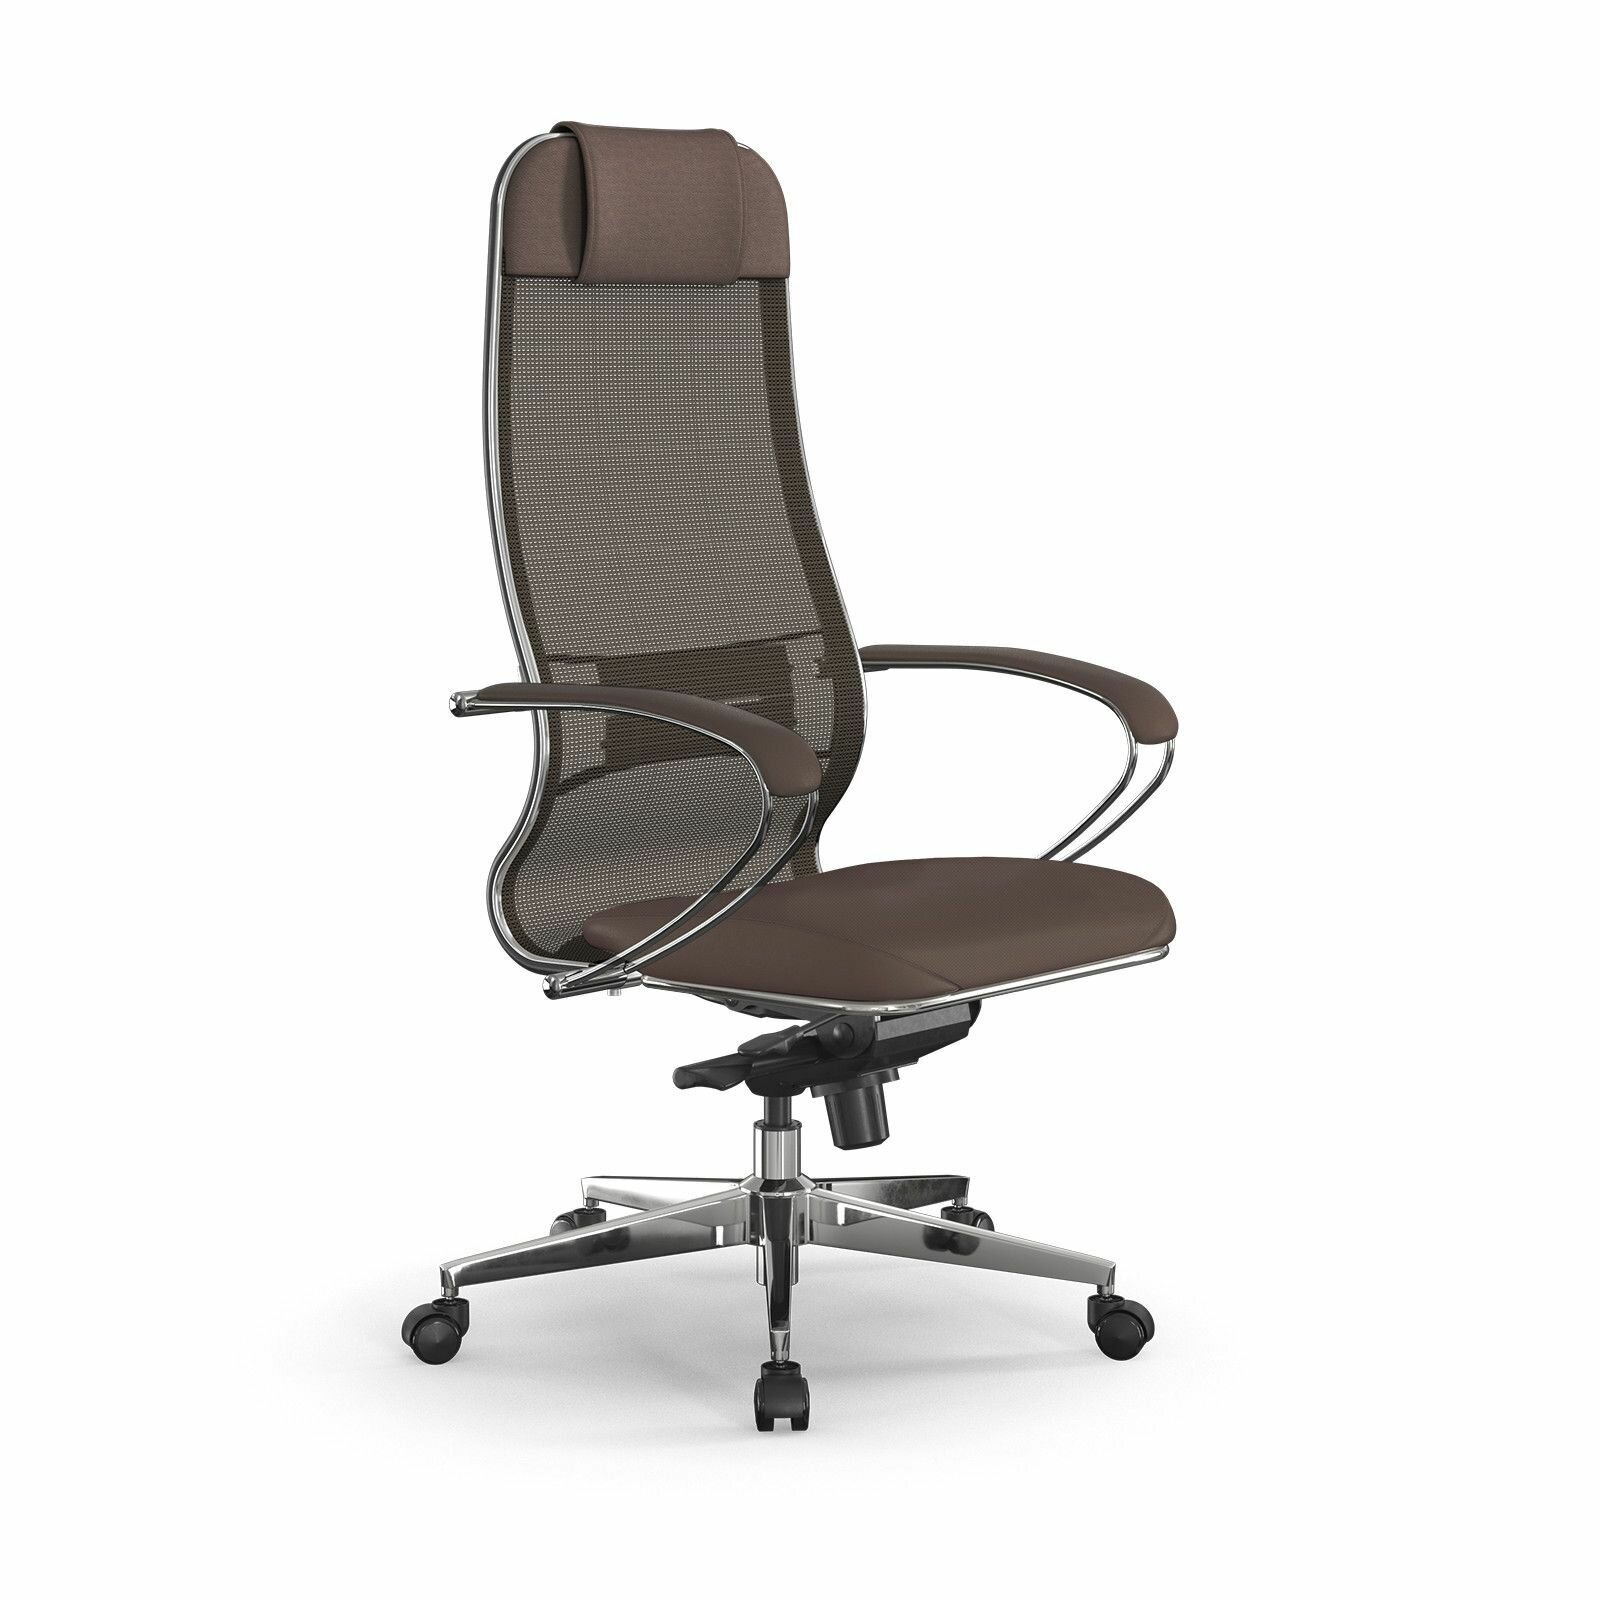 Компьютерное офисное кресло Metta Samurai Comfort S Infinity Easy Clean Светло-коричневое